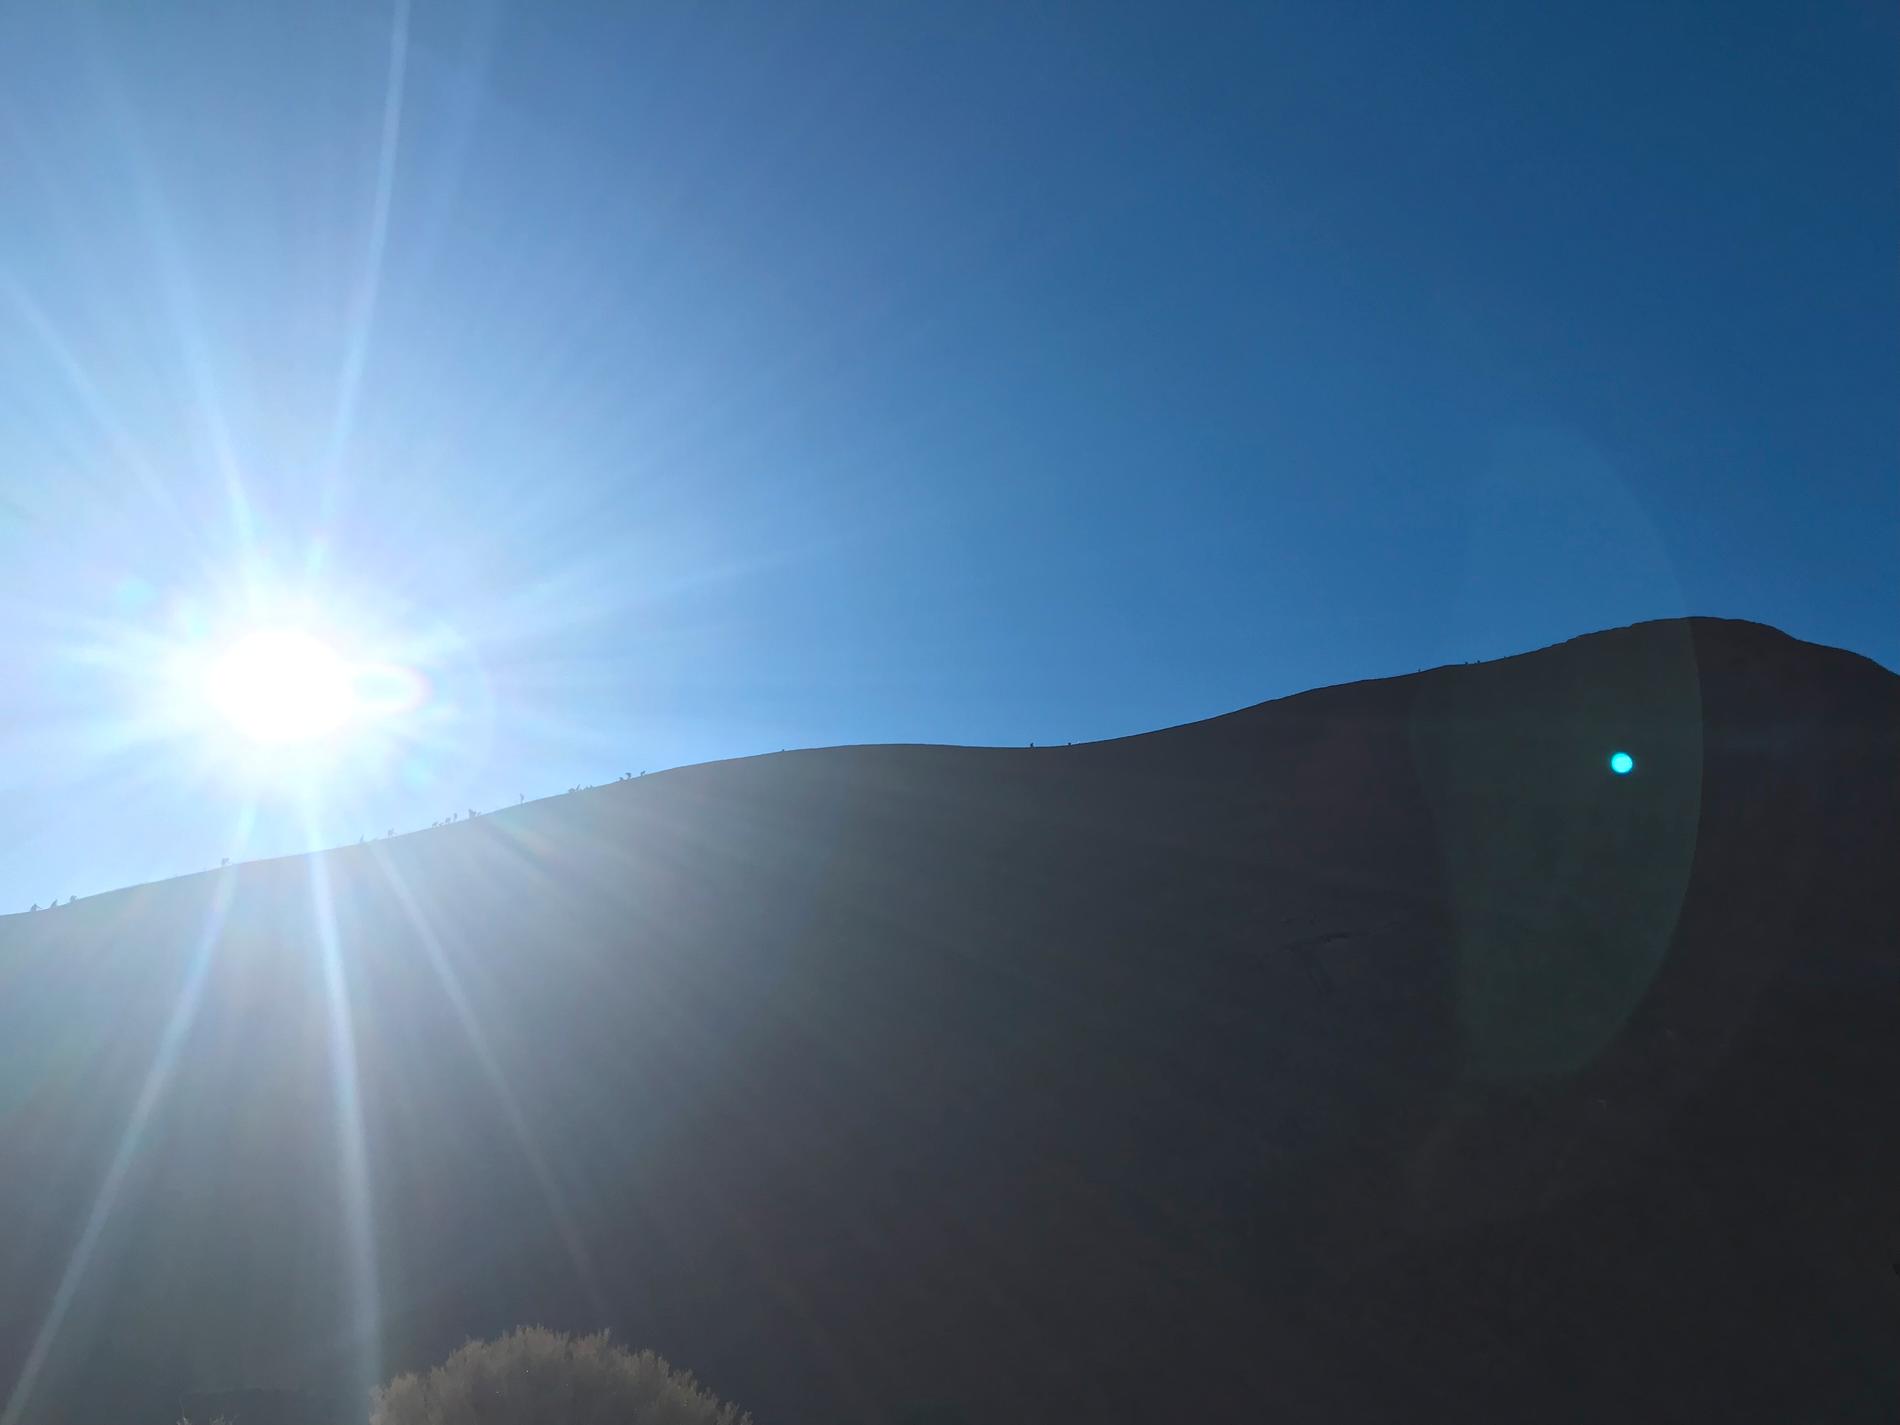 Klättrare på Uluru (Ayers Rock) avtecknar sig som små prickar längs klippans kant.